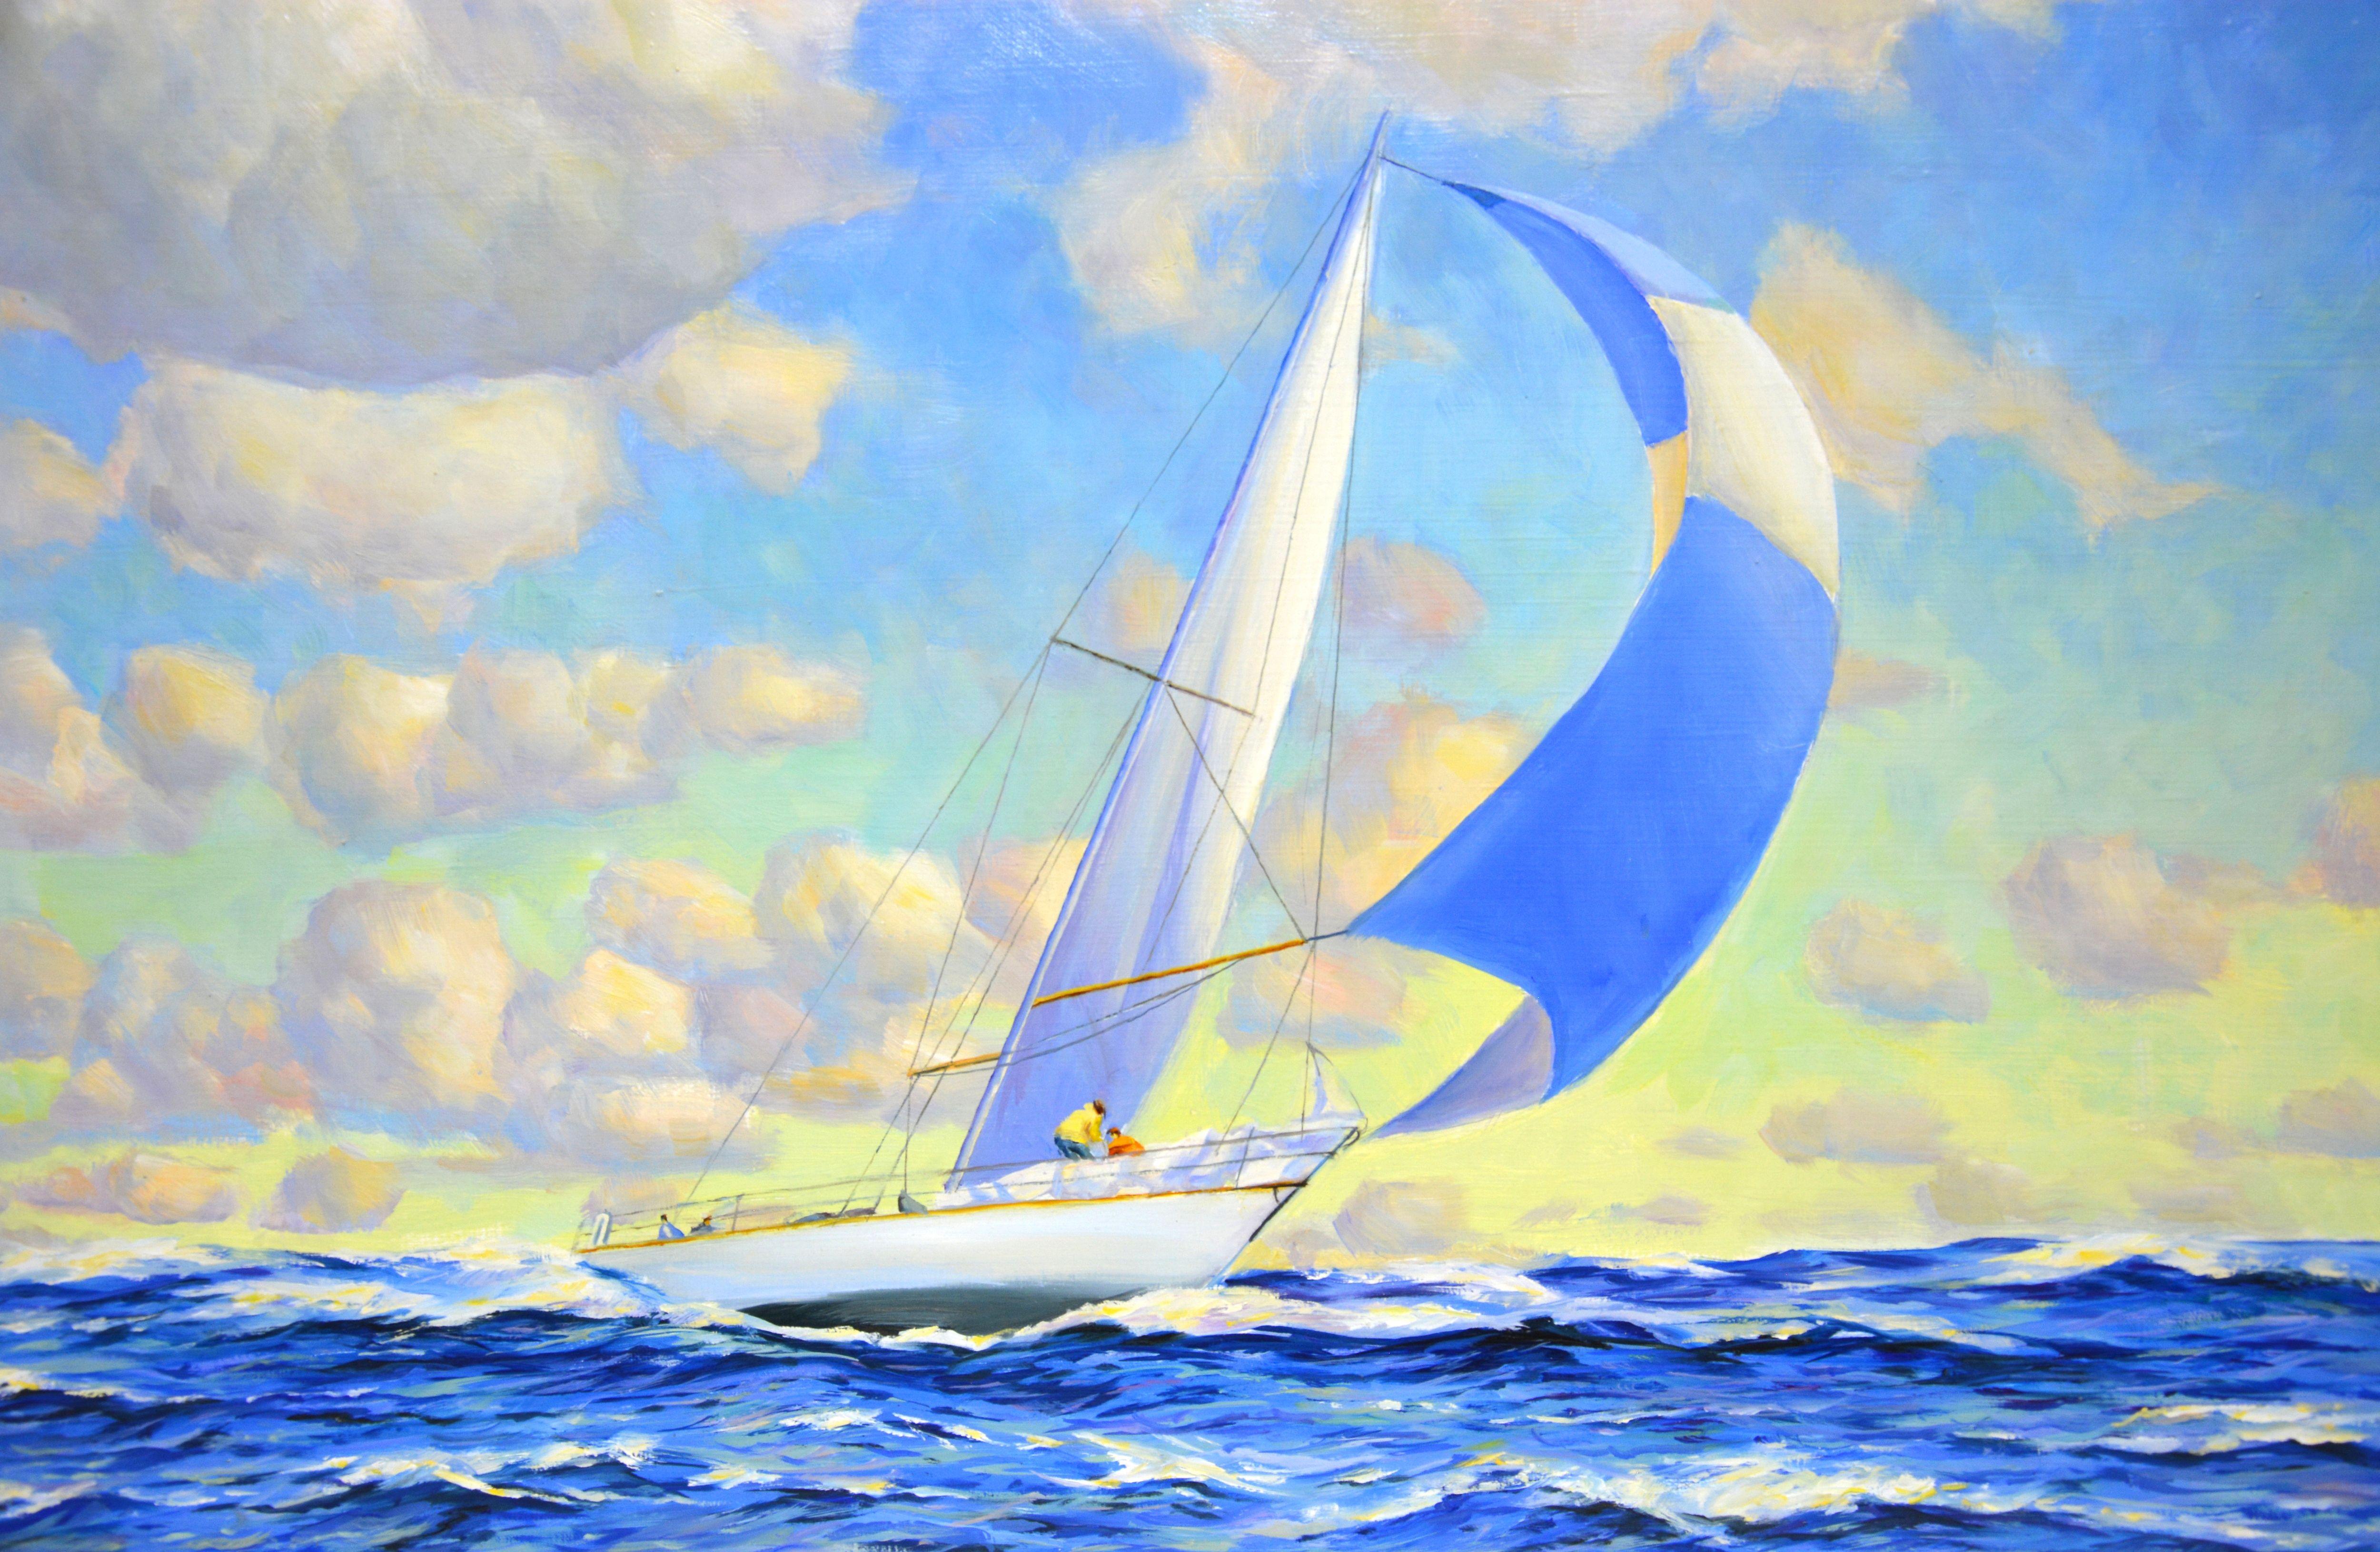 Peinture murale Vent frais. Paysage marin avec un yacht. Le voilier navigue sur les vagues de l'océan, les nuages flottent, la vue est sereine. Des matériaux de qualité sont utilisés. Peinture à l'huile sur toile de lin. Vernis. Signature de